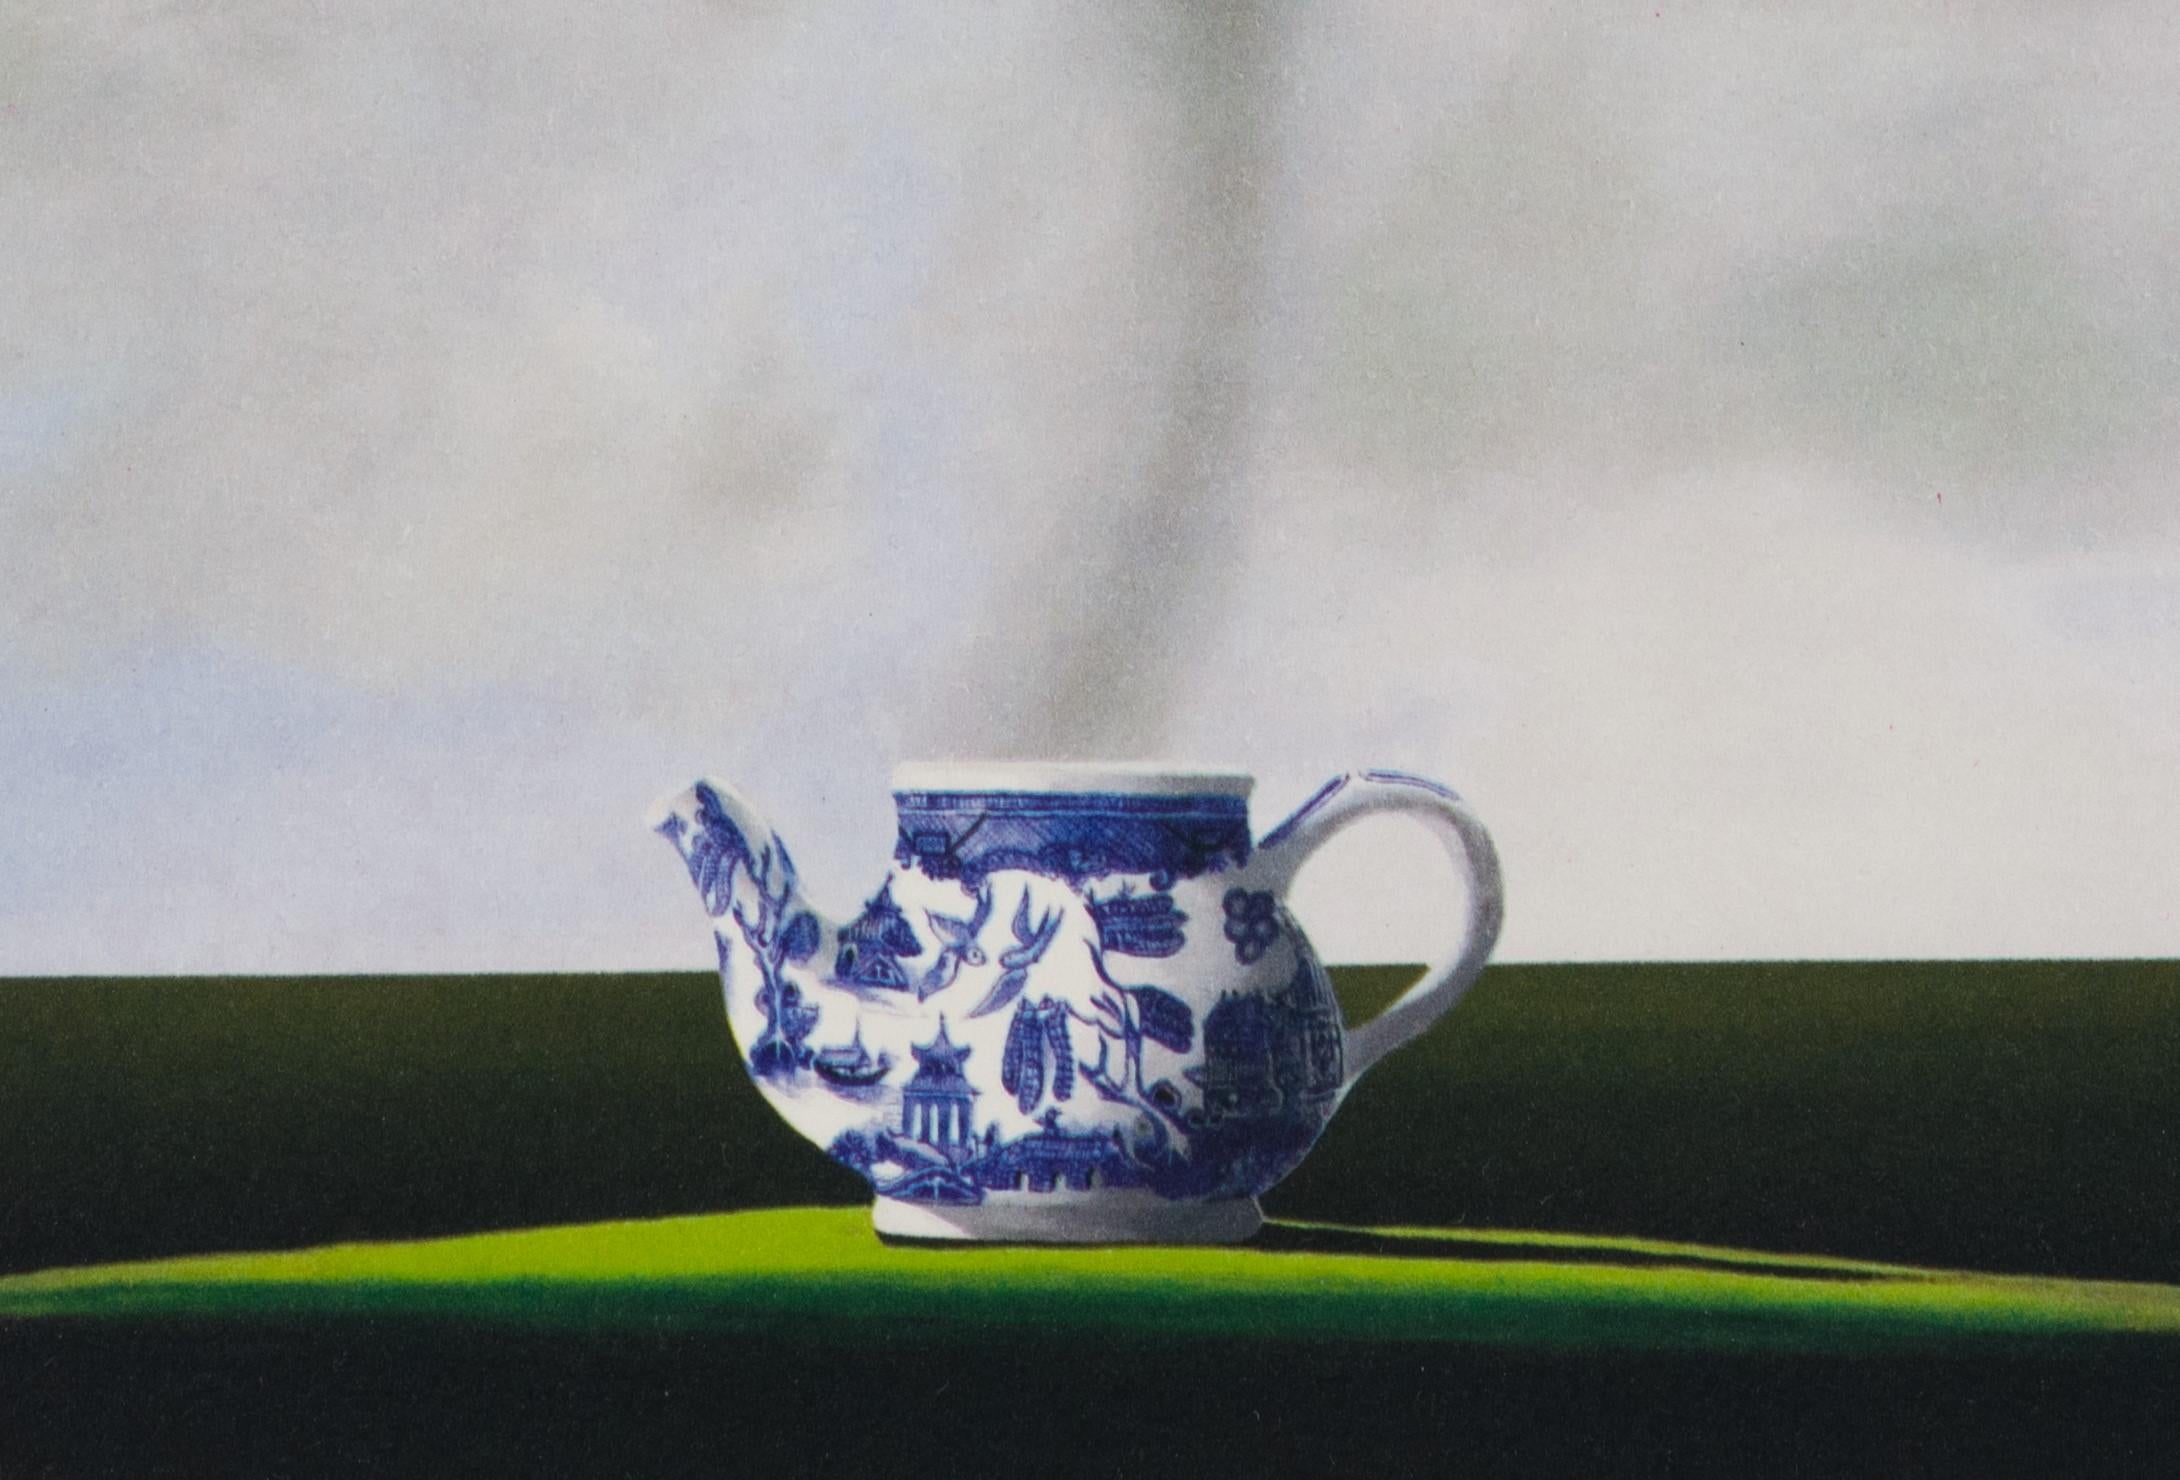 Tempest in einer Teekanne (Zeitgenössisch), Print, von Robert Deyber 